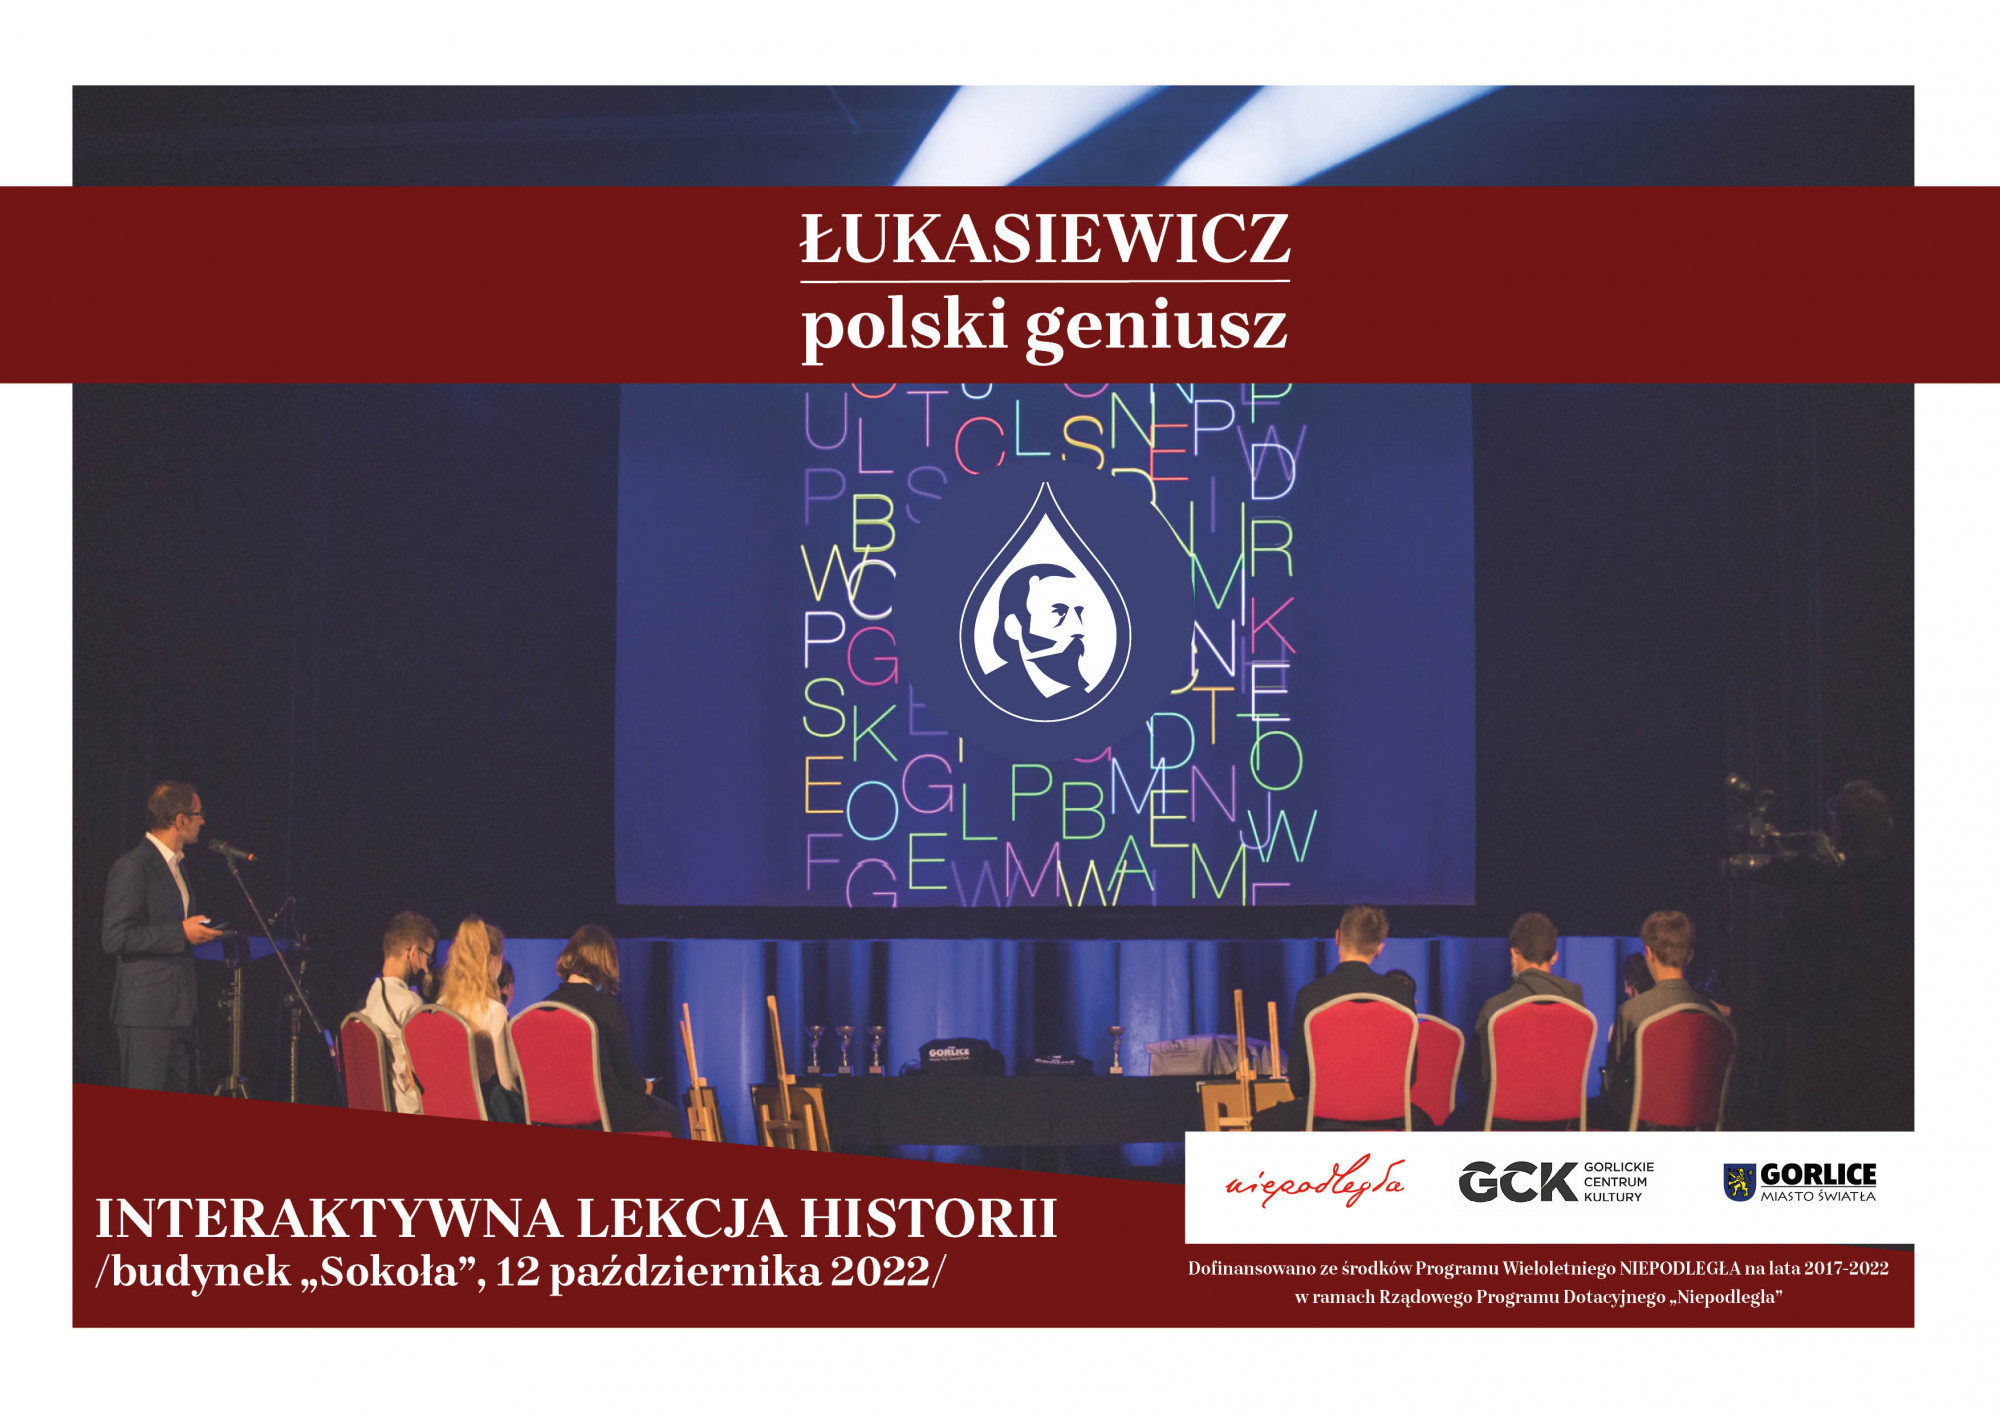 Oglądaj Interaktywną lekcję historii o Łukasiewiczu na żywo!